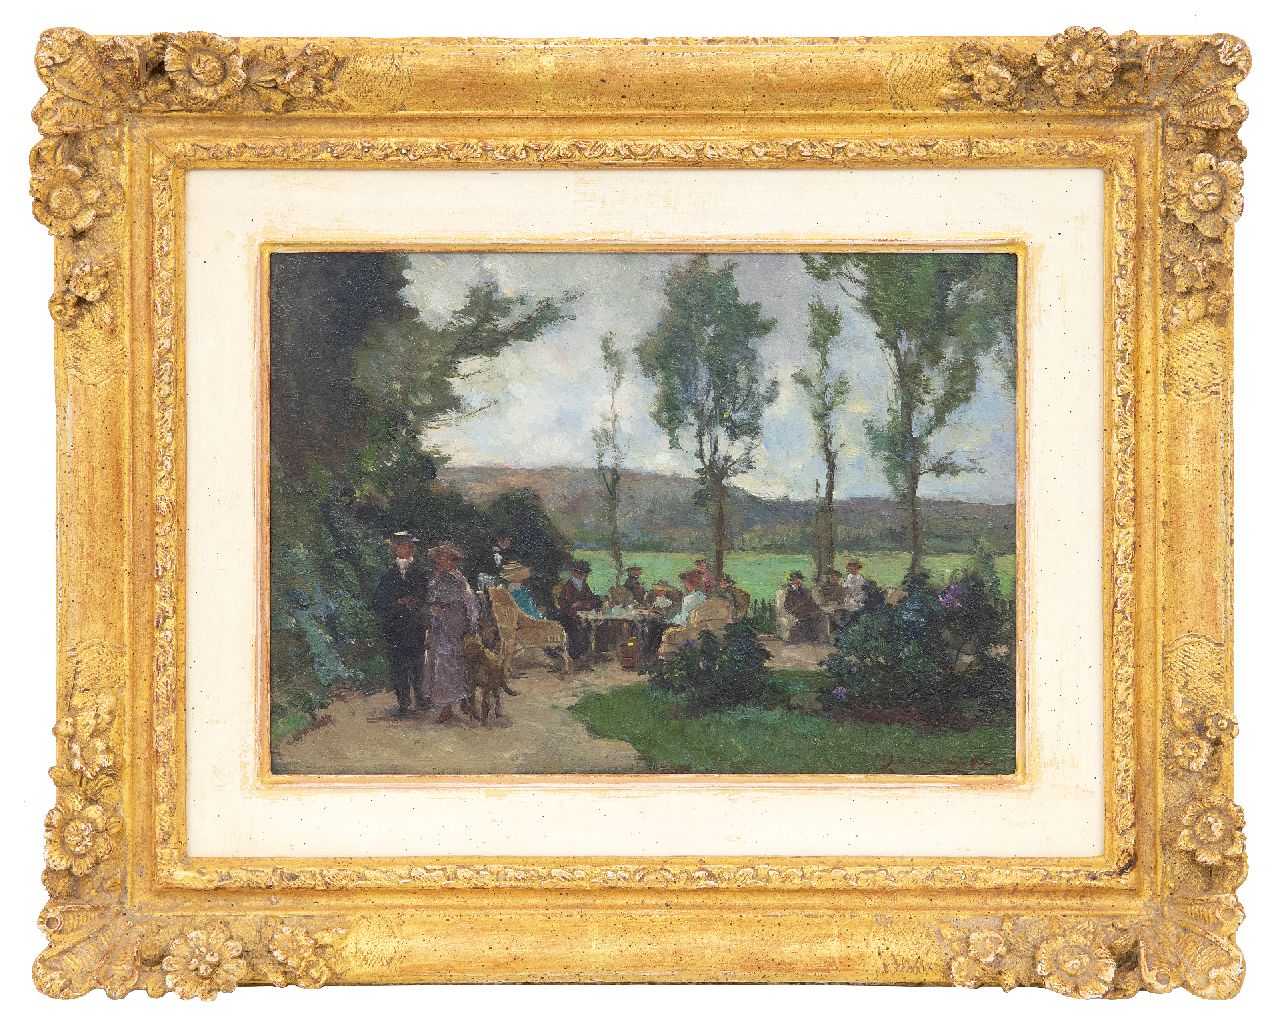 Akkeringa J.E.H.  | 'Johannes Evert' Hendrik Akkeringa | Paintings offered for sale | The tea garden, oil on panel 17.4 x 24.6 cm, signed l.r.